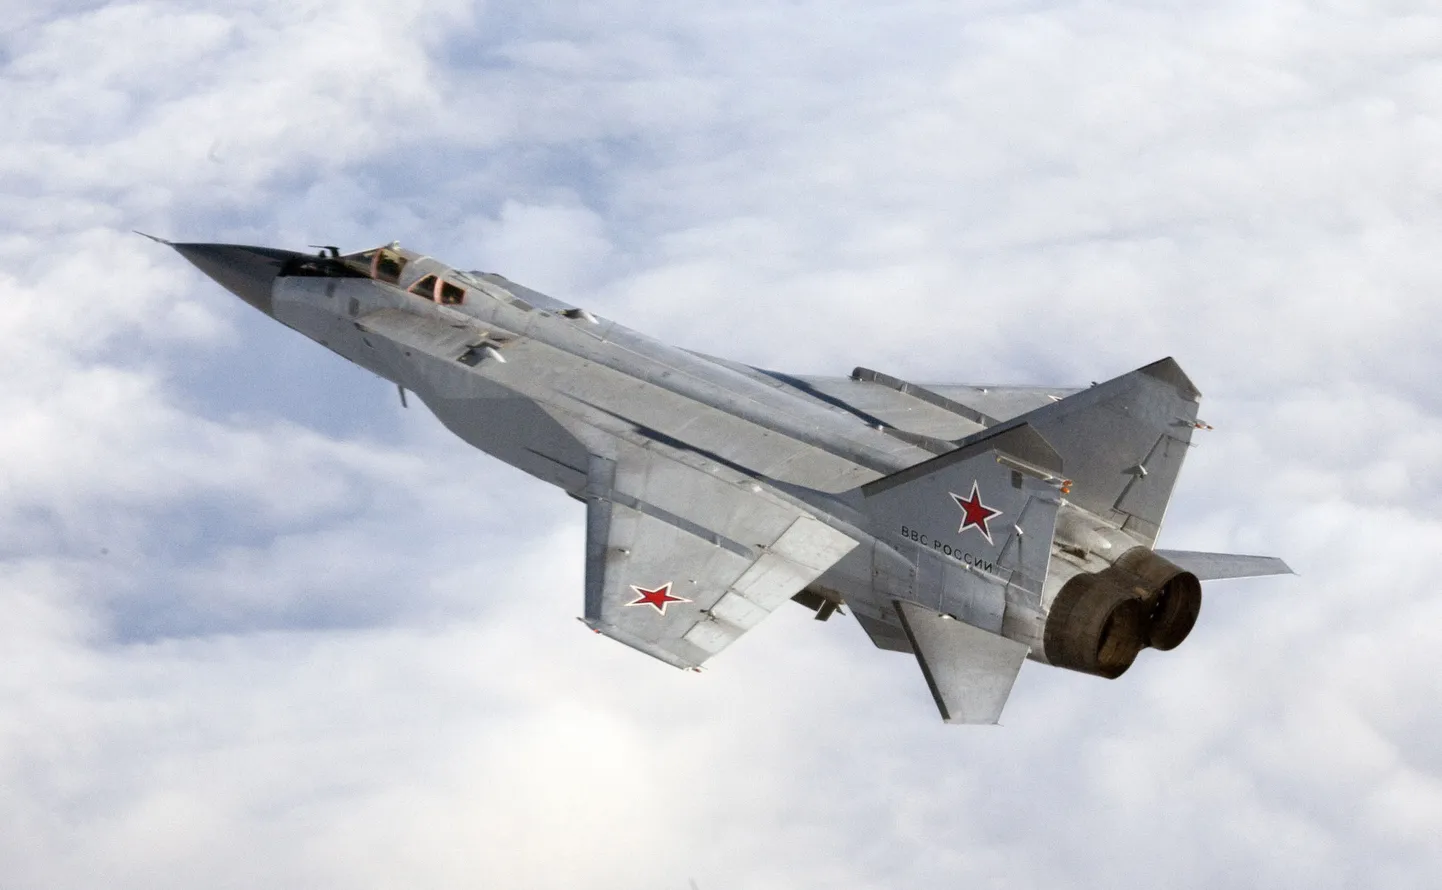 Venemaa sõjalennuk Mikojan MiG-31